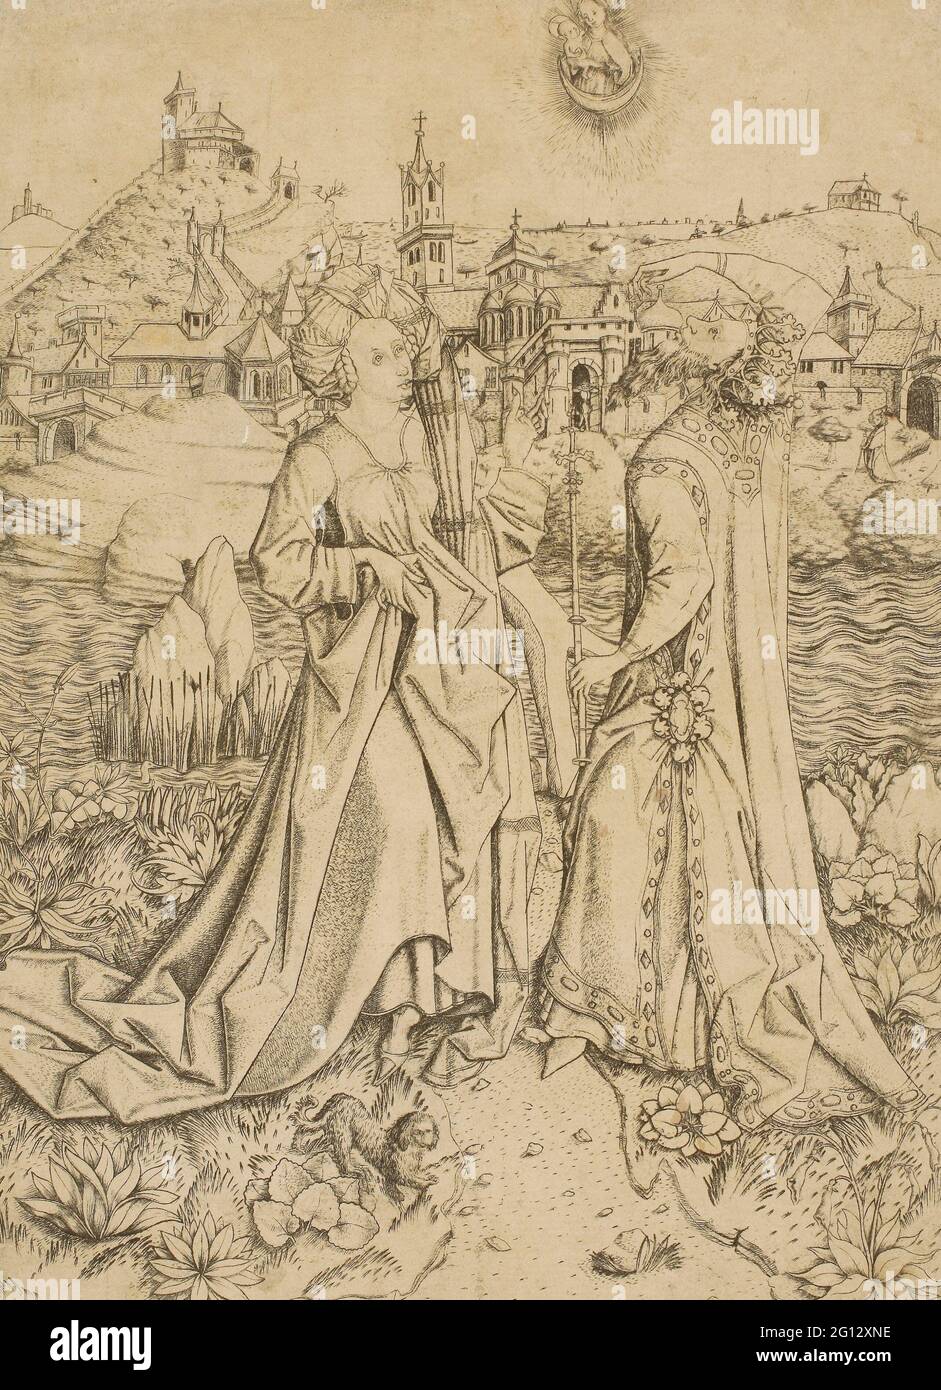 Maestro E.S. Augustus y el Sibyl - c. 1450 - Maestro E. S. Alemán, activo c. 1450-1467. Grabado en negro sobre papel. 1445 - 1455. Alemania. Foto de stock